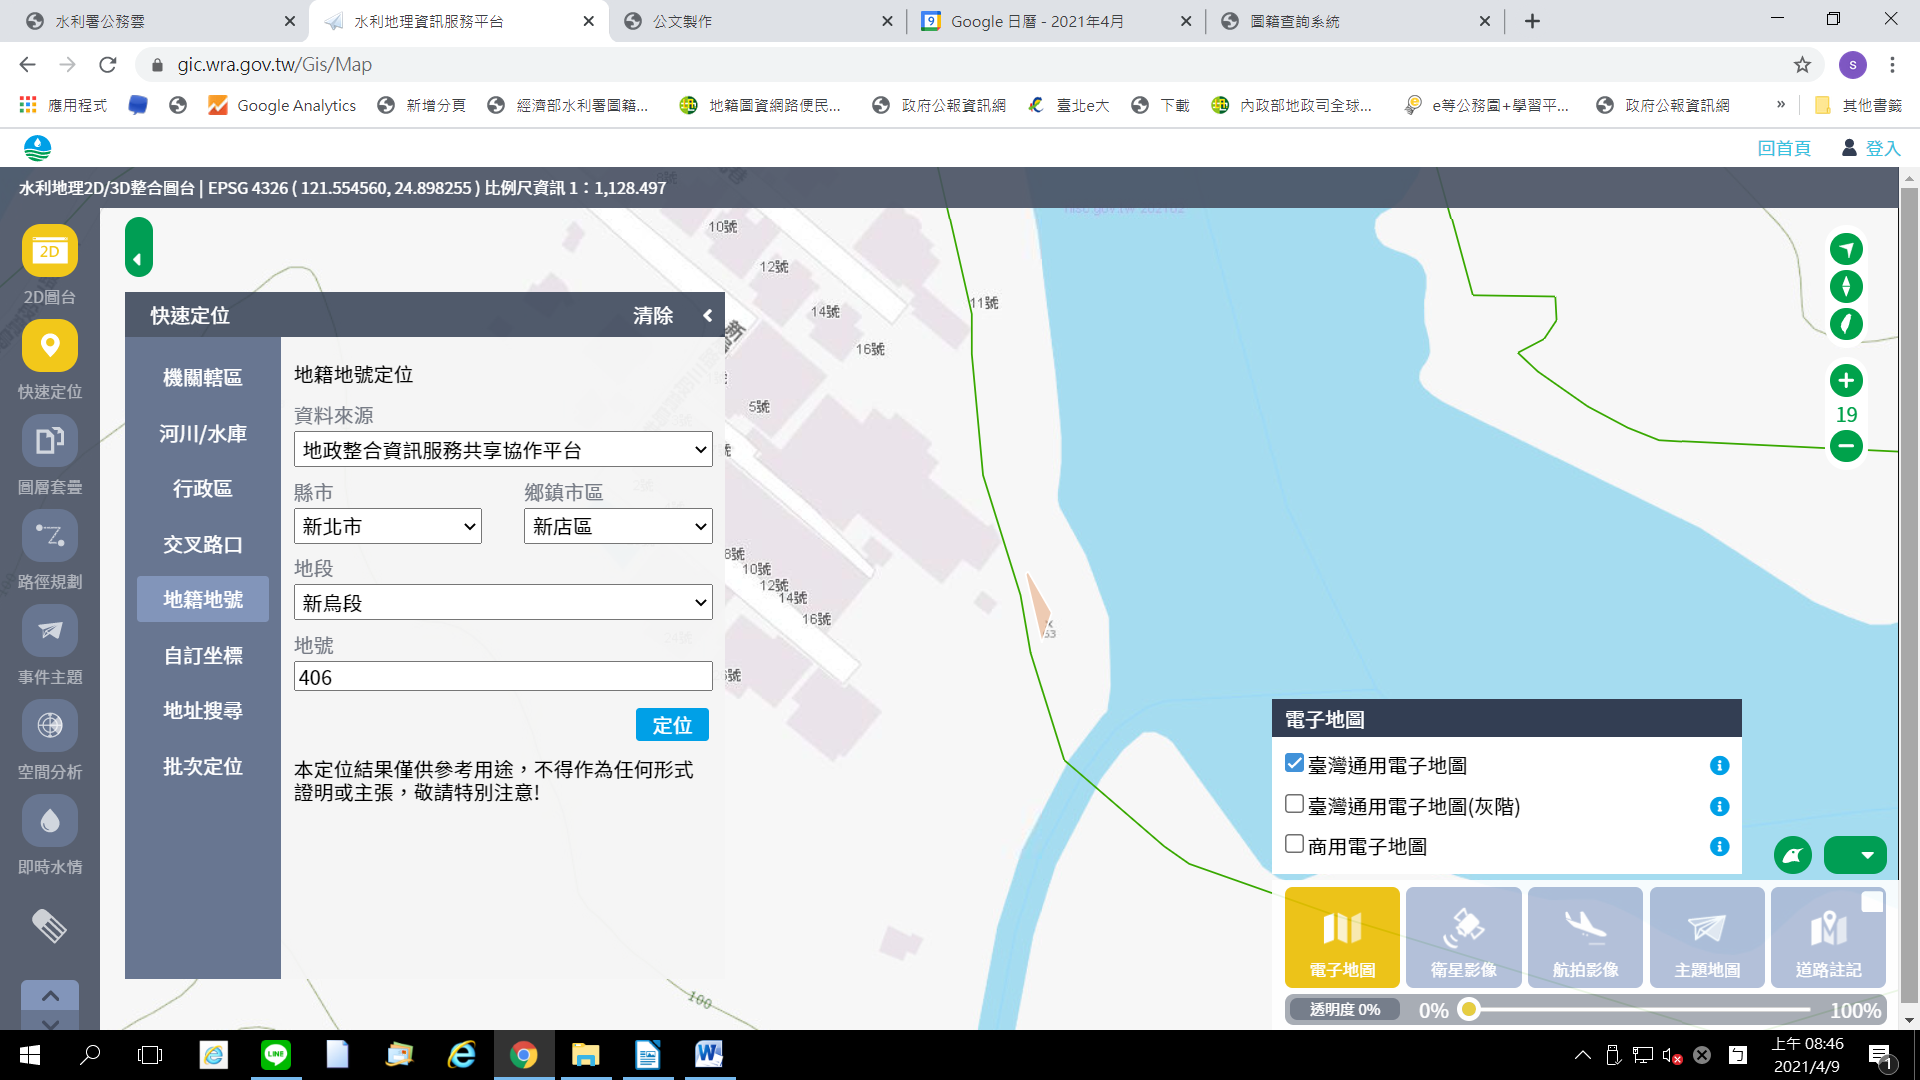 圖1 水利地理資訊服務平台查詢畫面